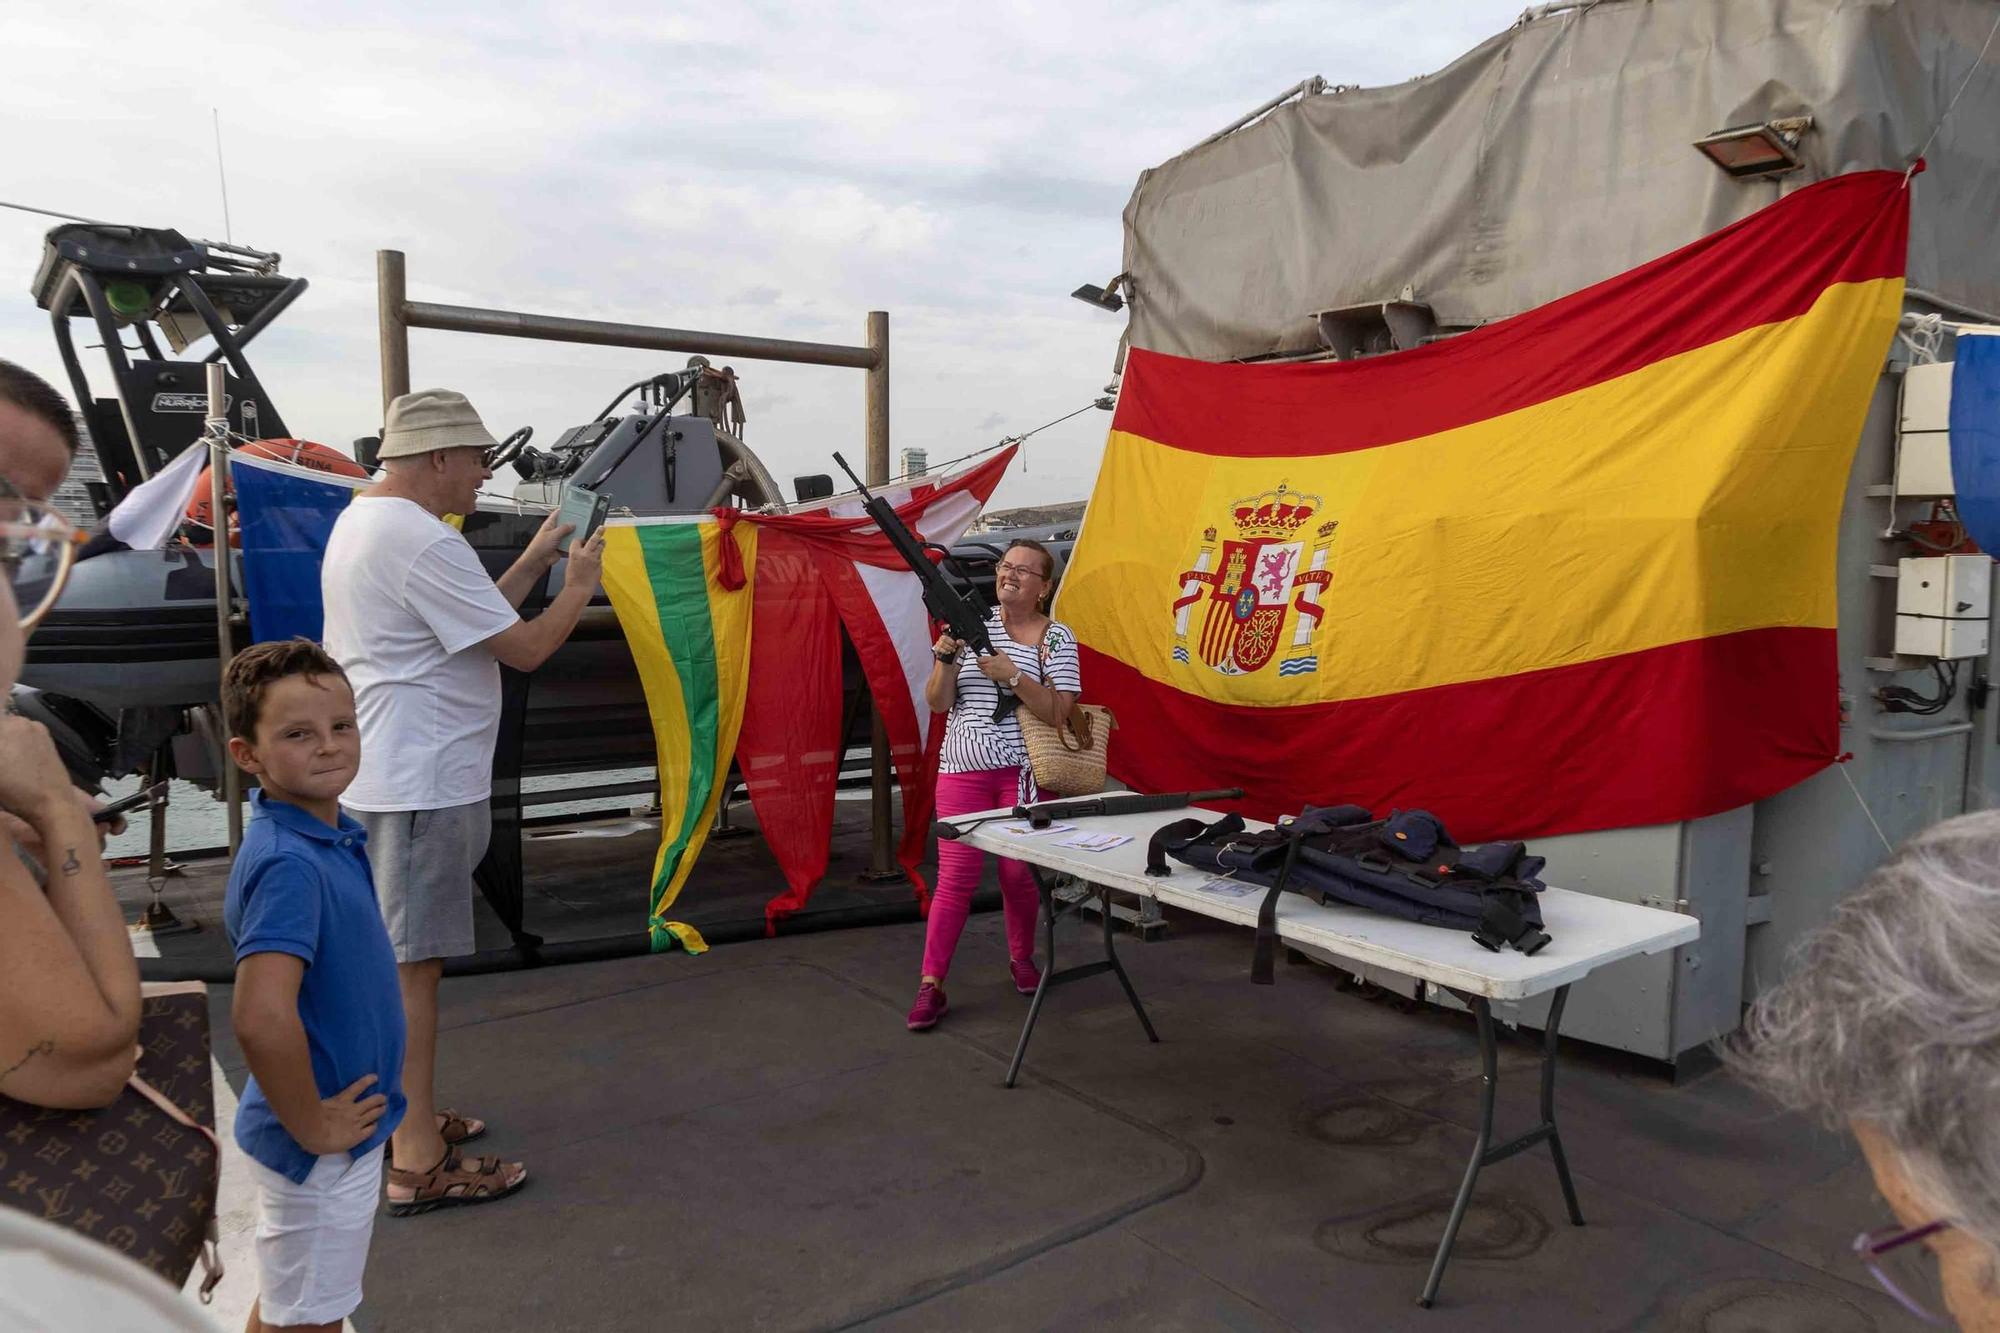 El patrullero "Infanta Cristina" se despide de Alicante tras 43 años al servicio de la Armada Española